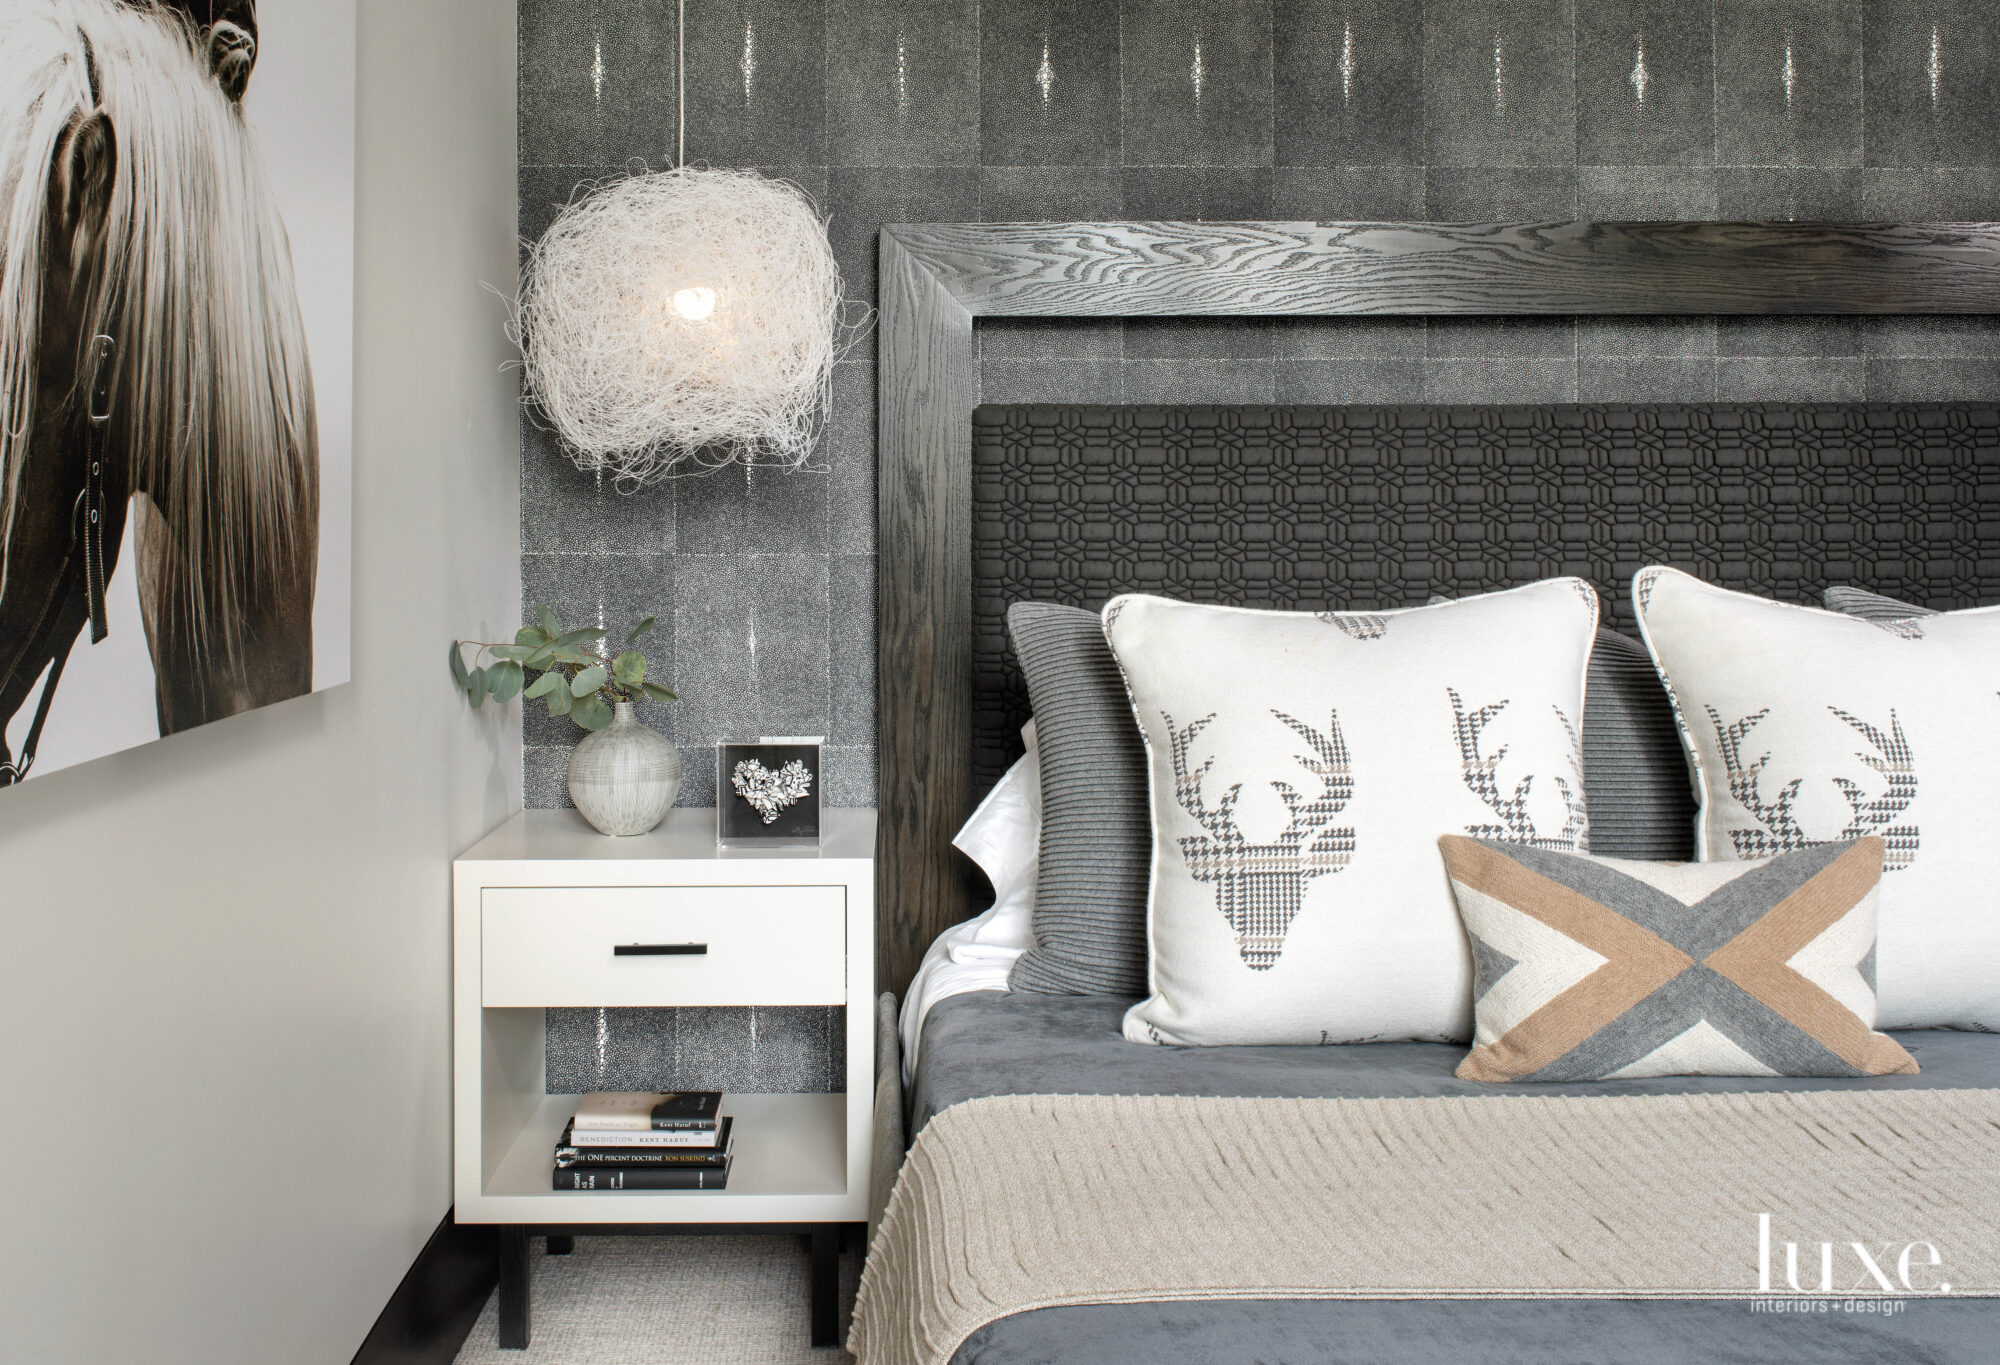 A bedroom has pillows with an deer-head motif and a sculptural light fixture.